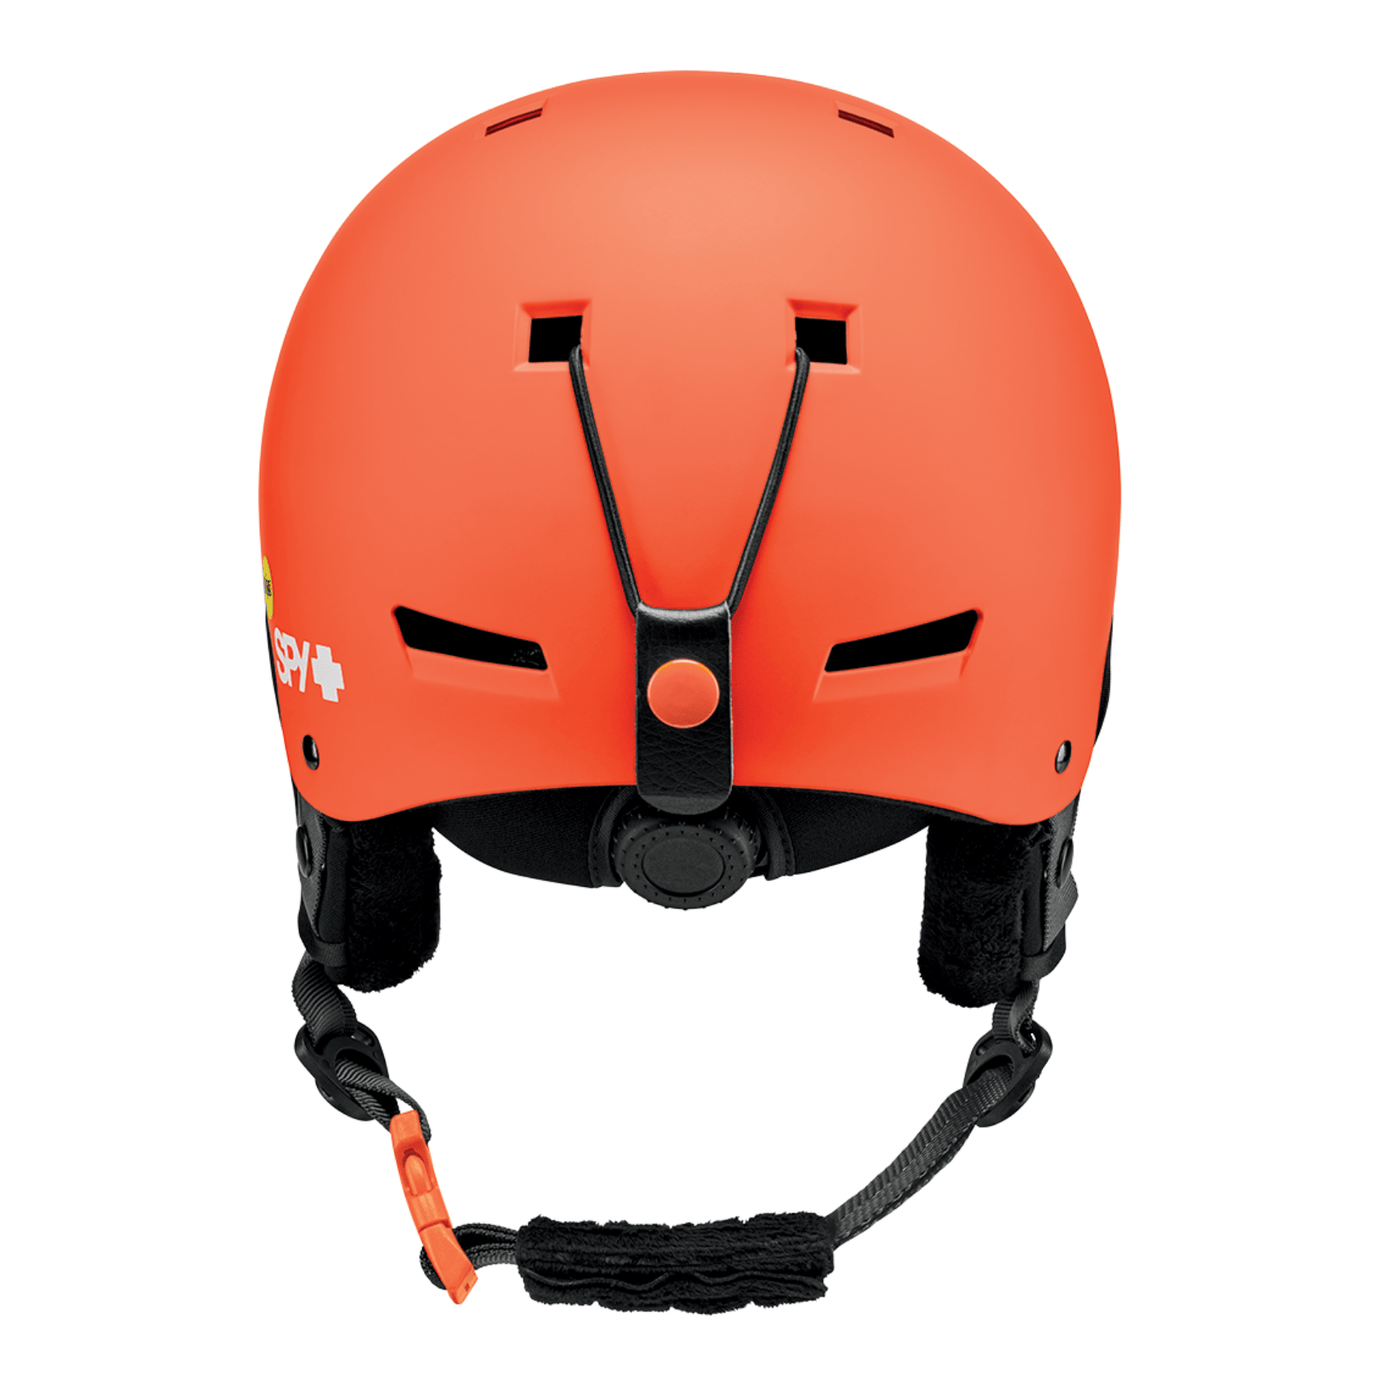 Adult Snowboard Helmet - Orange